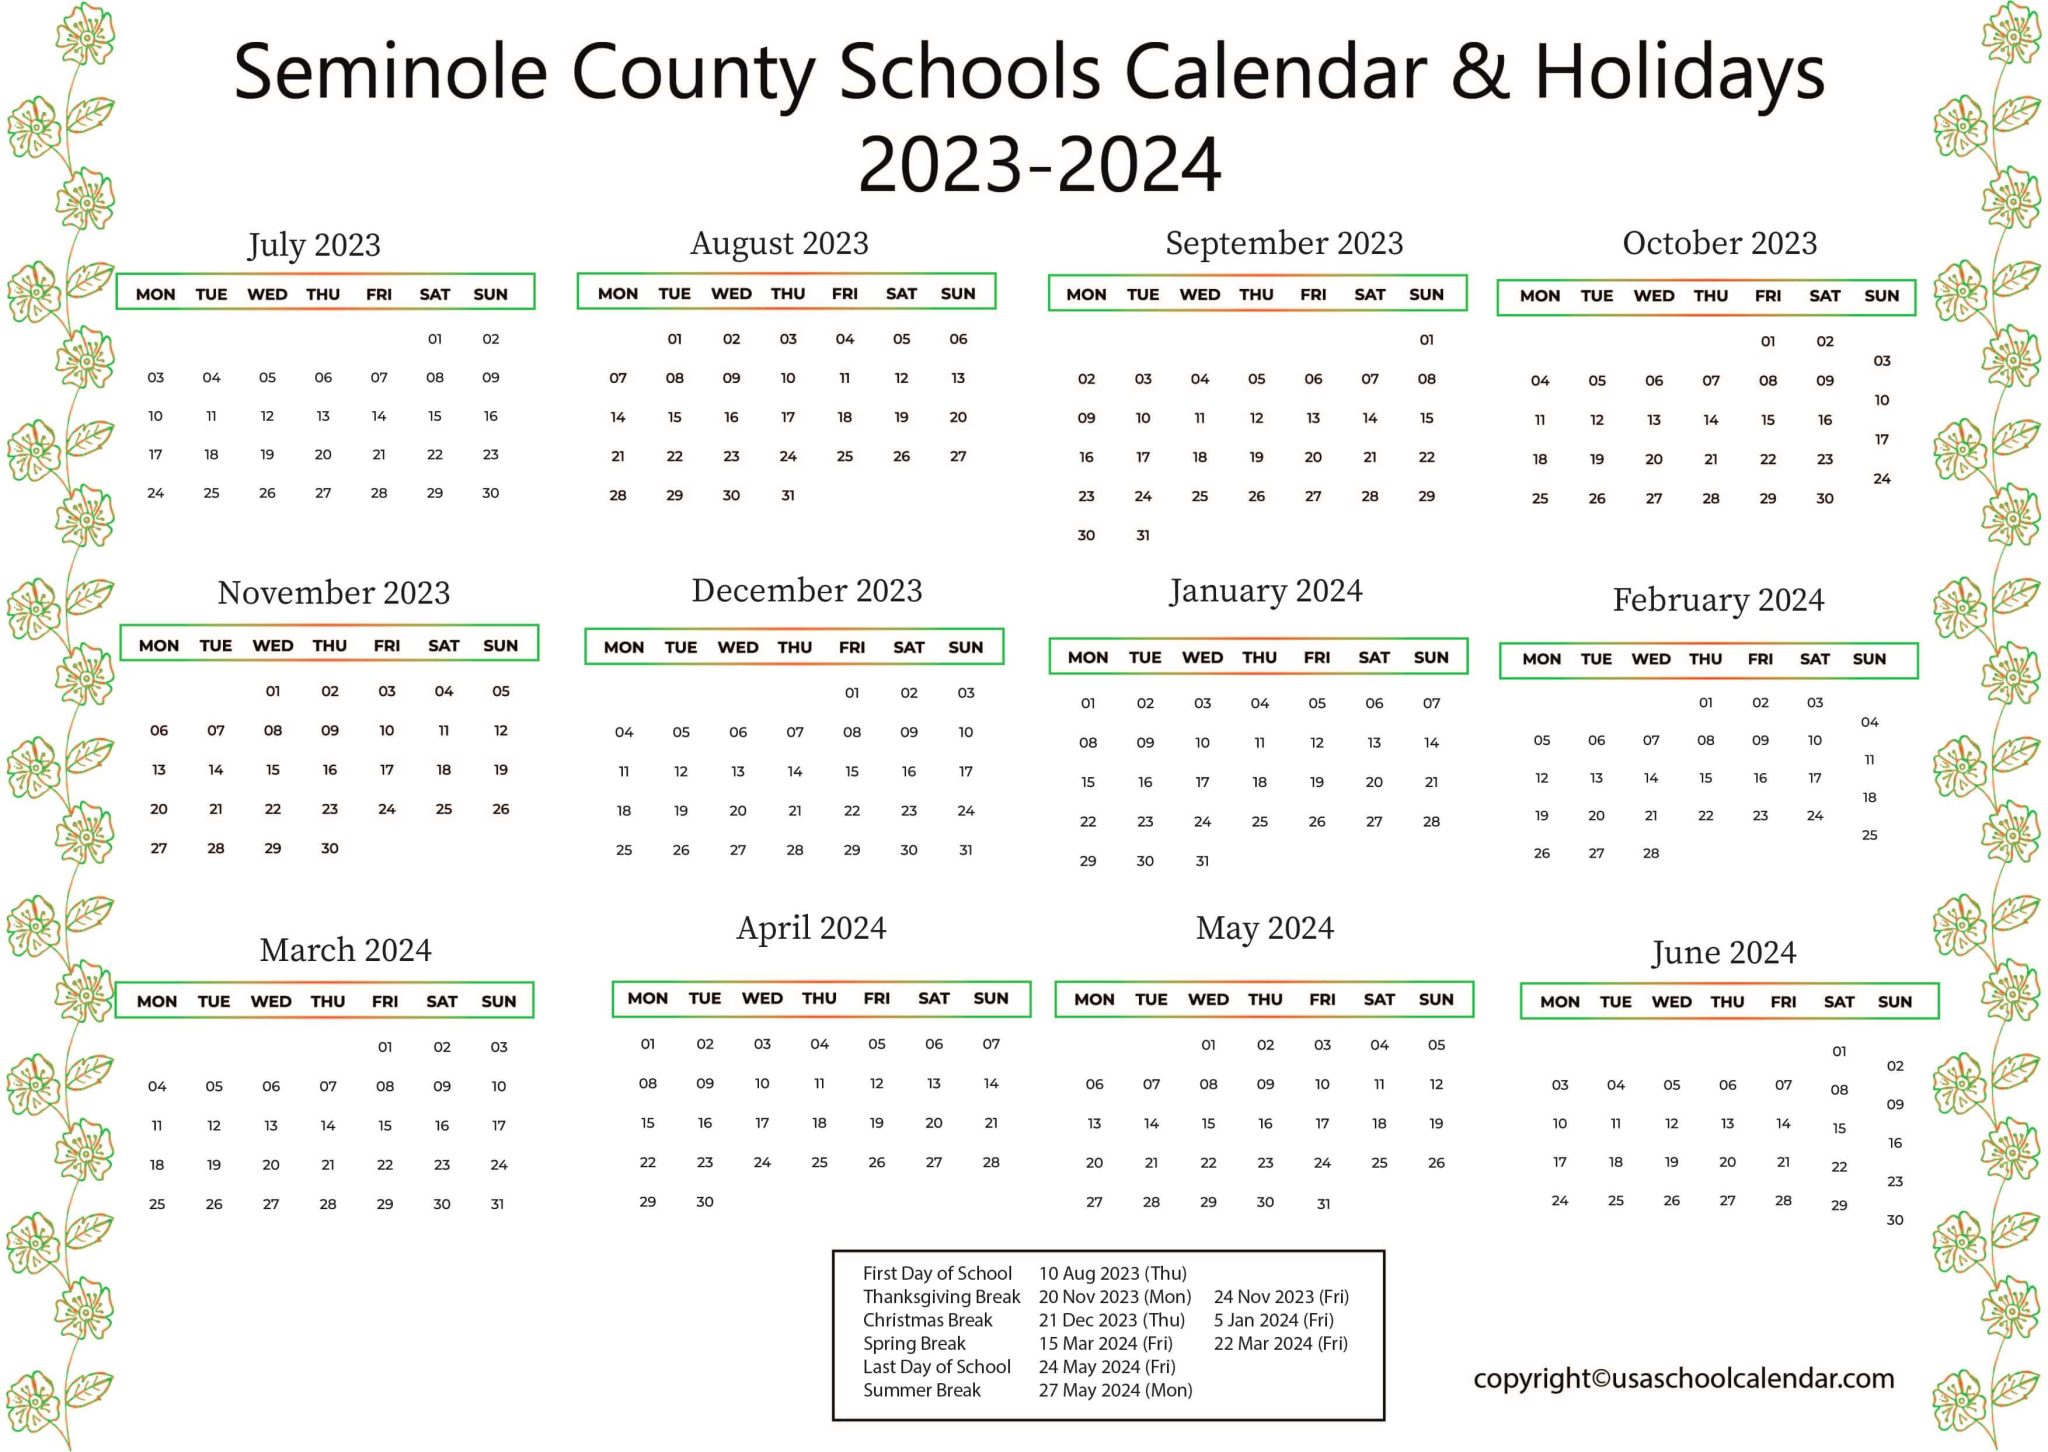 Seminole County Schools Calendar & Holidays 2023-2024